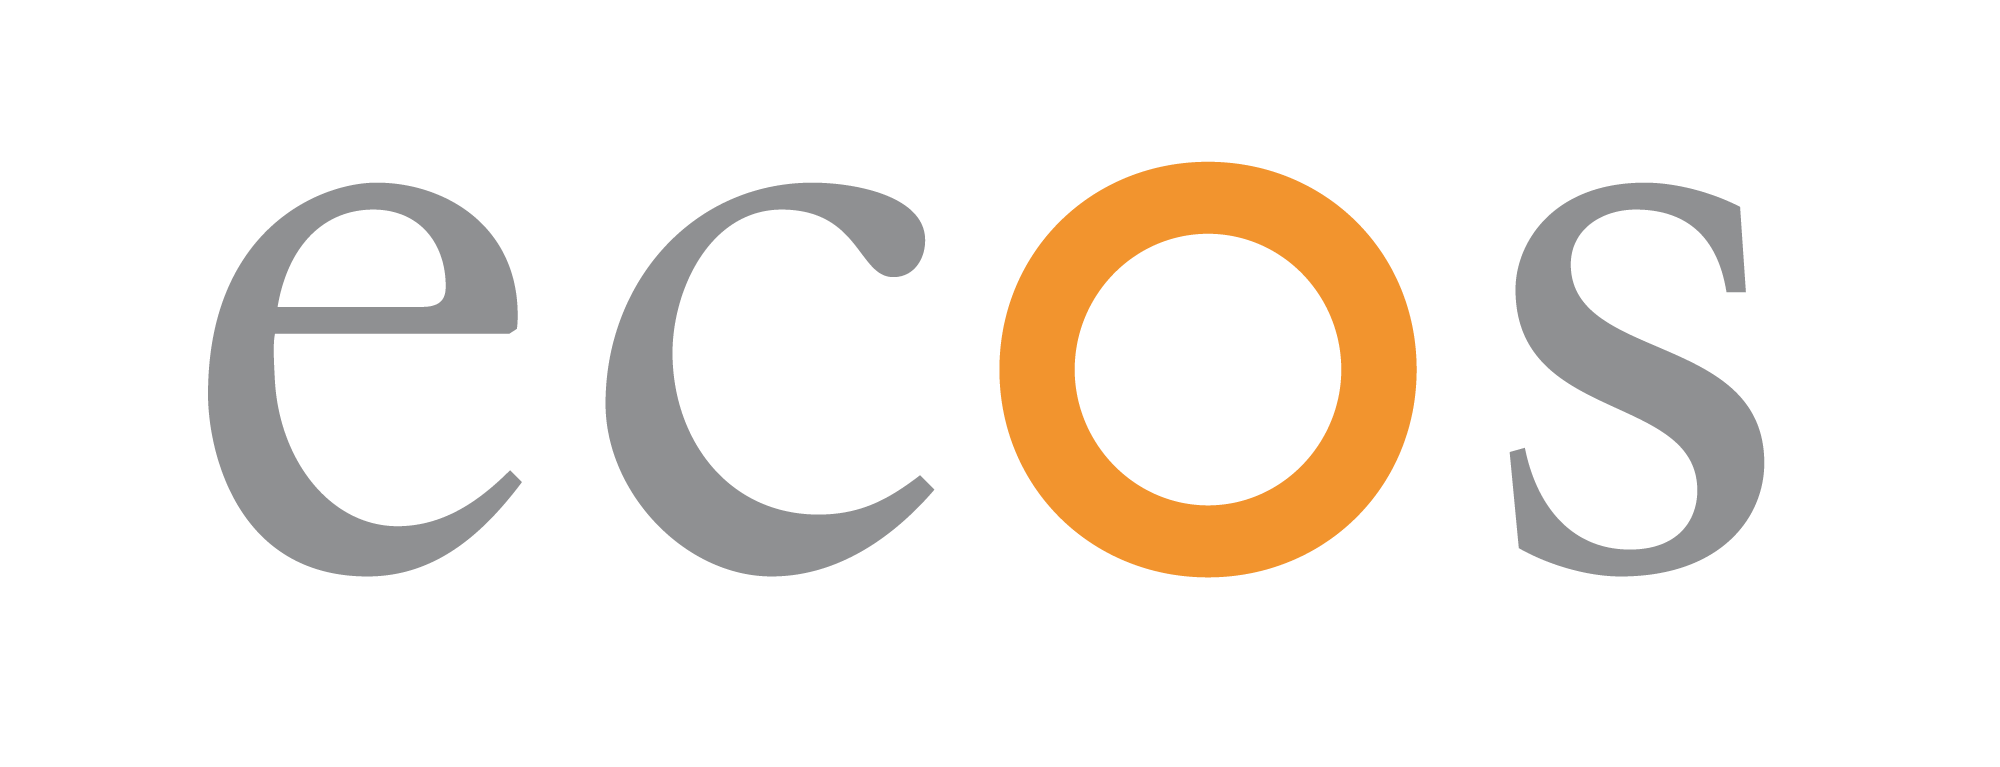 logo_ecos_rgb